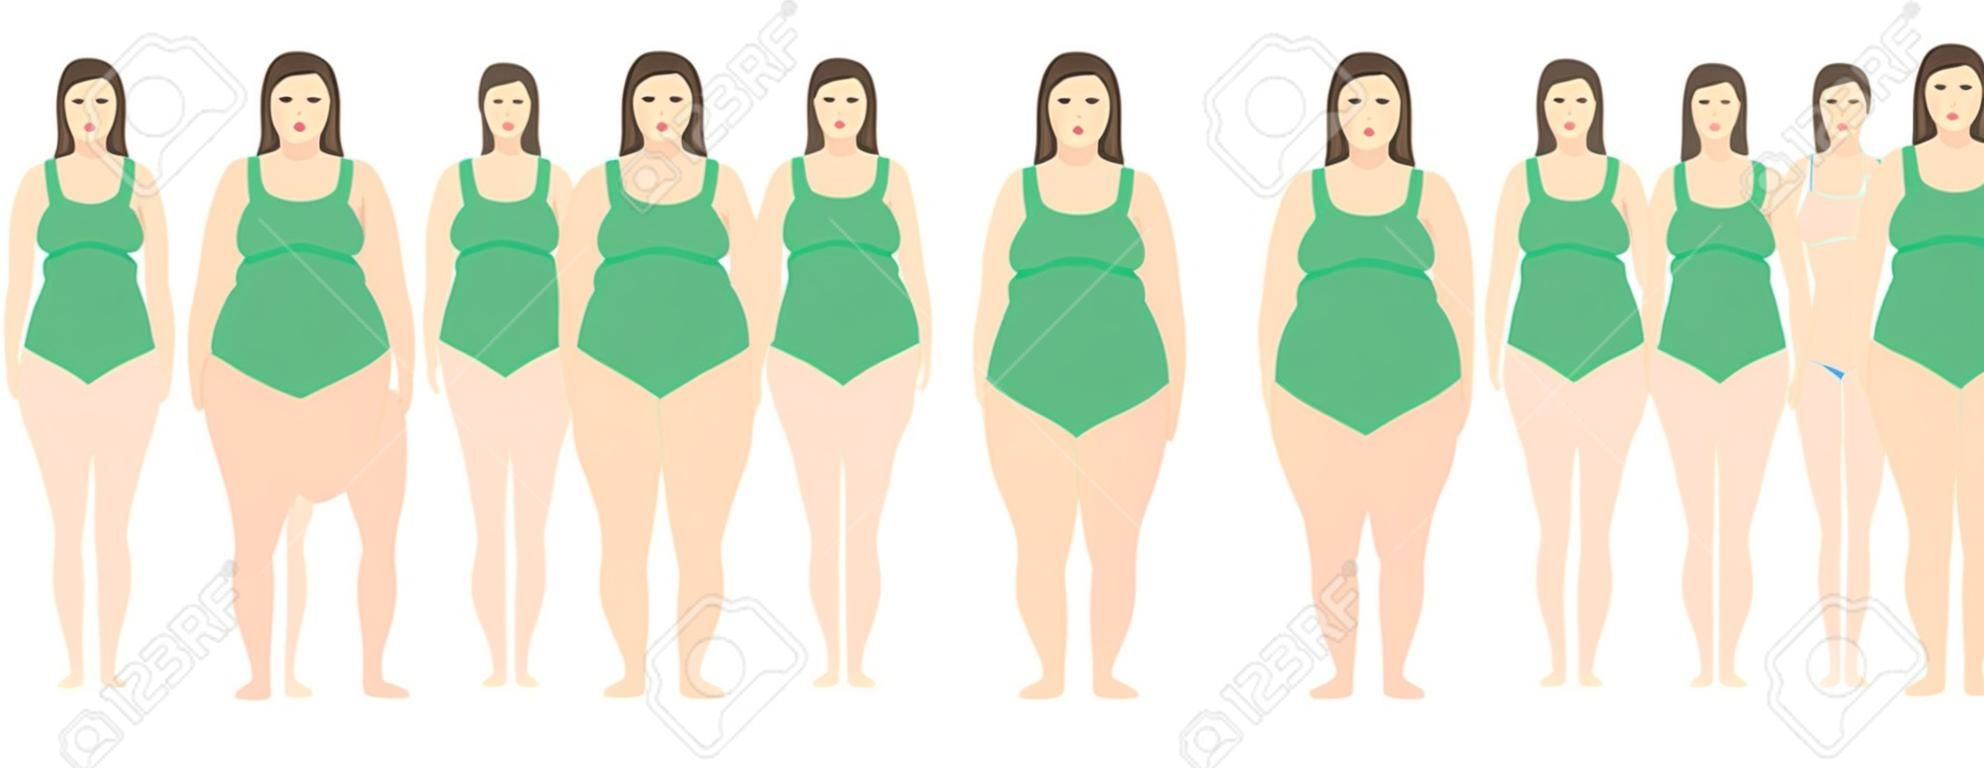 거식 증에서 매우 비만에 다른 무게를 가진 여자의 벡터 일러스트 레이 션. 체질량 지수, 체중 감량 개념.